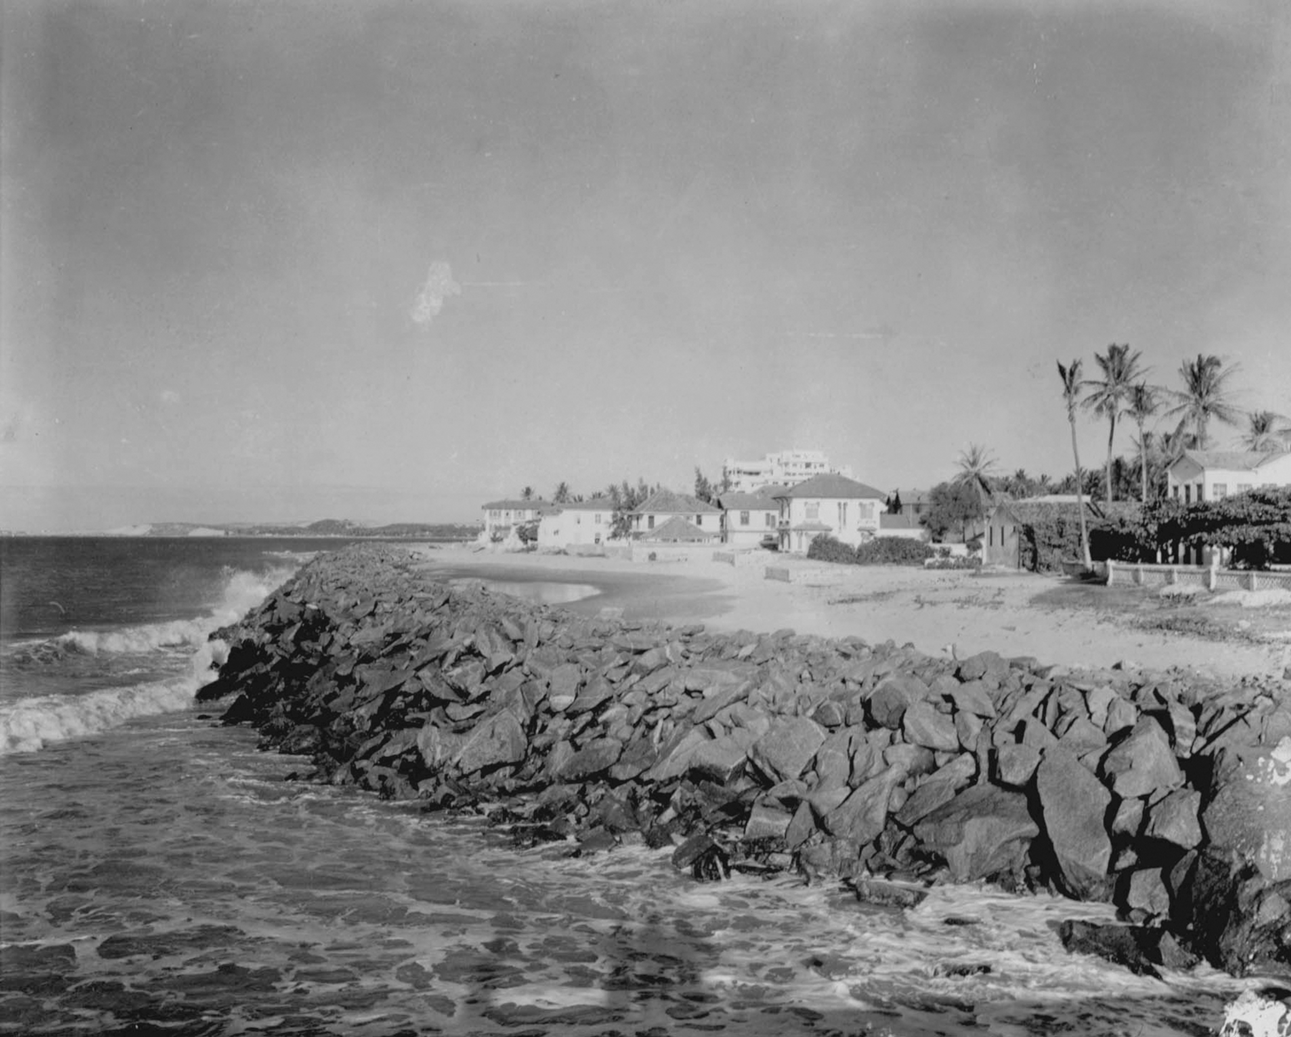 Fotografia em preto e branco. Praia com a orla repleta de rochas. Acima delas há uma via, casas e palmeiras.